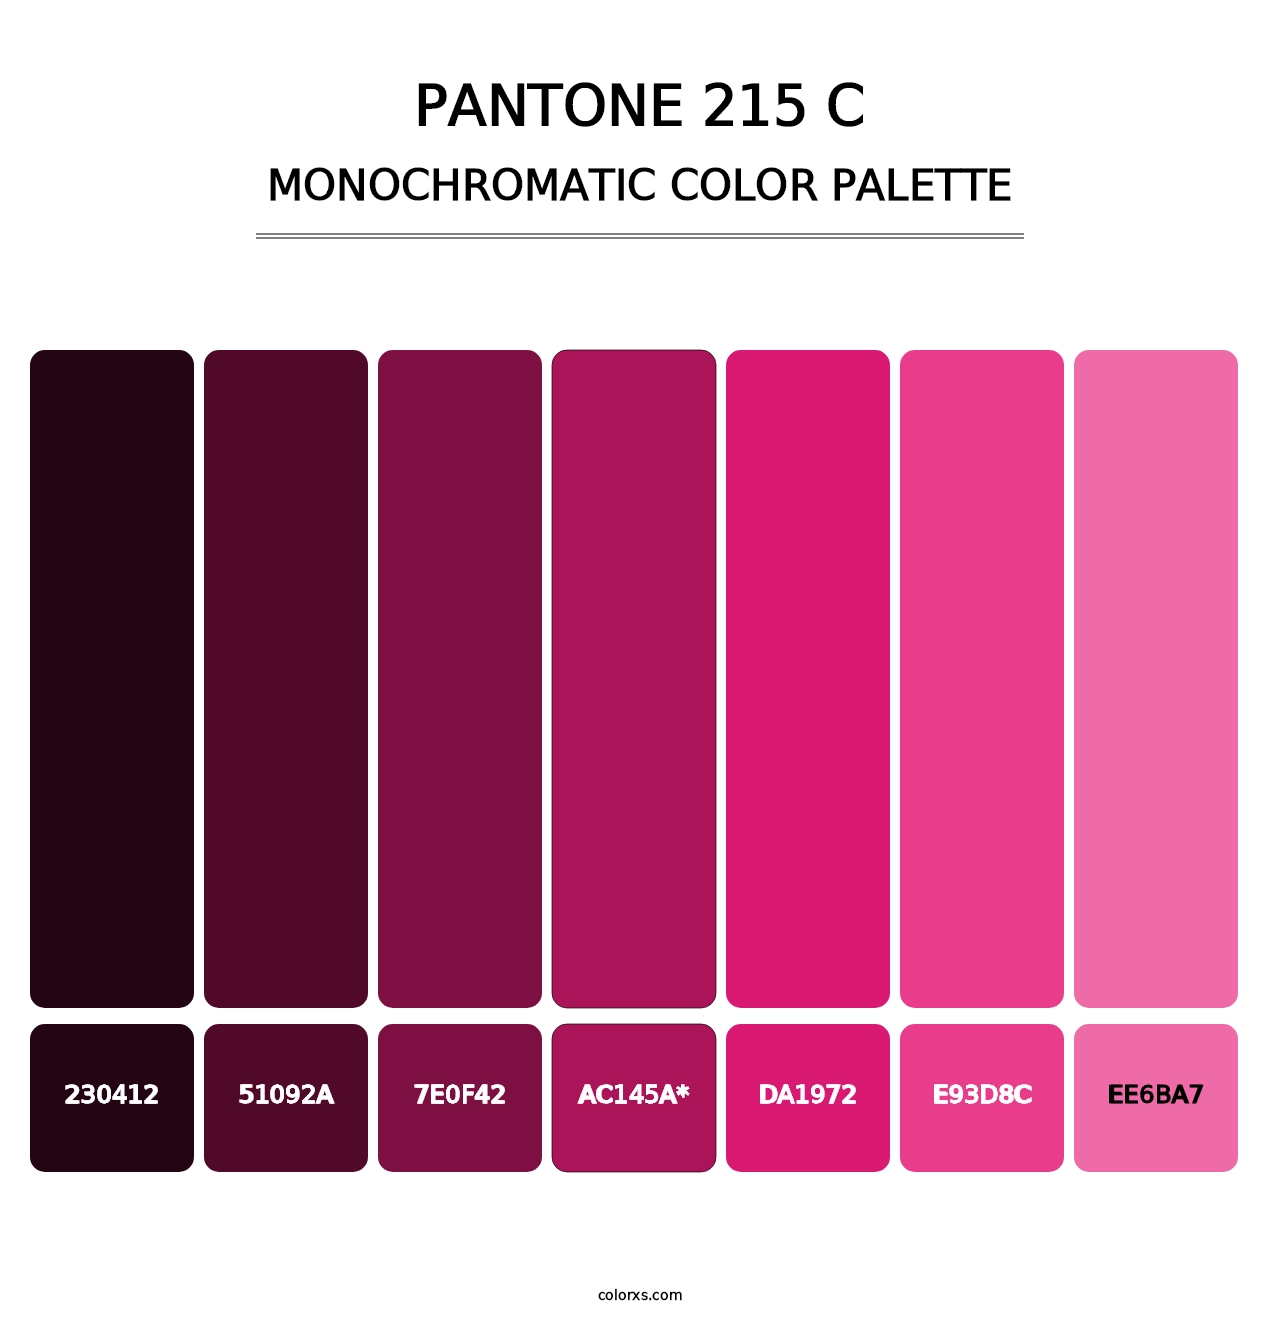 PANTONE 215 C - Monochromatic Color Palette